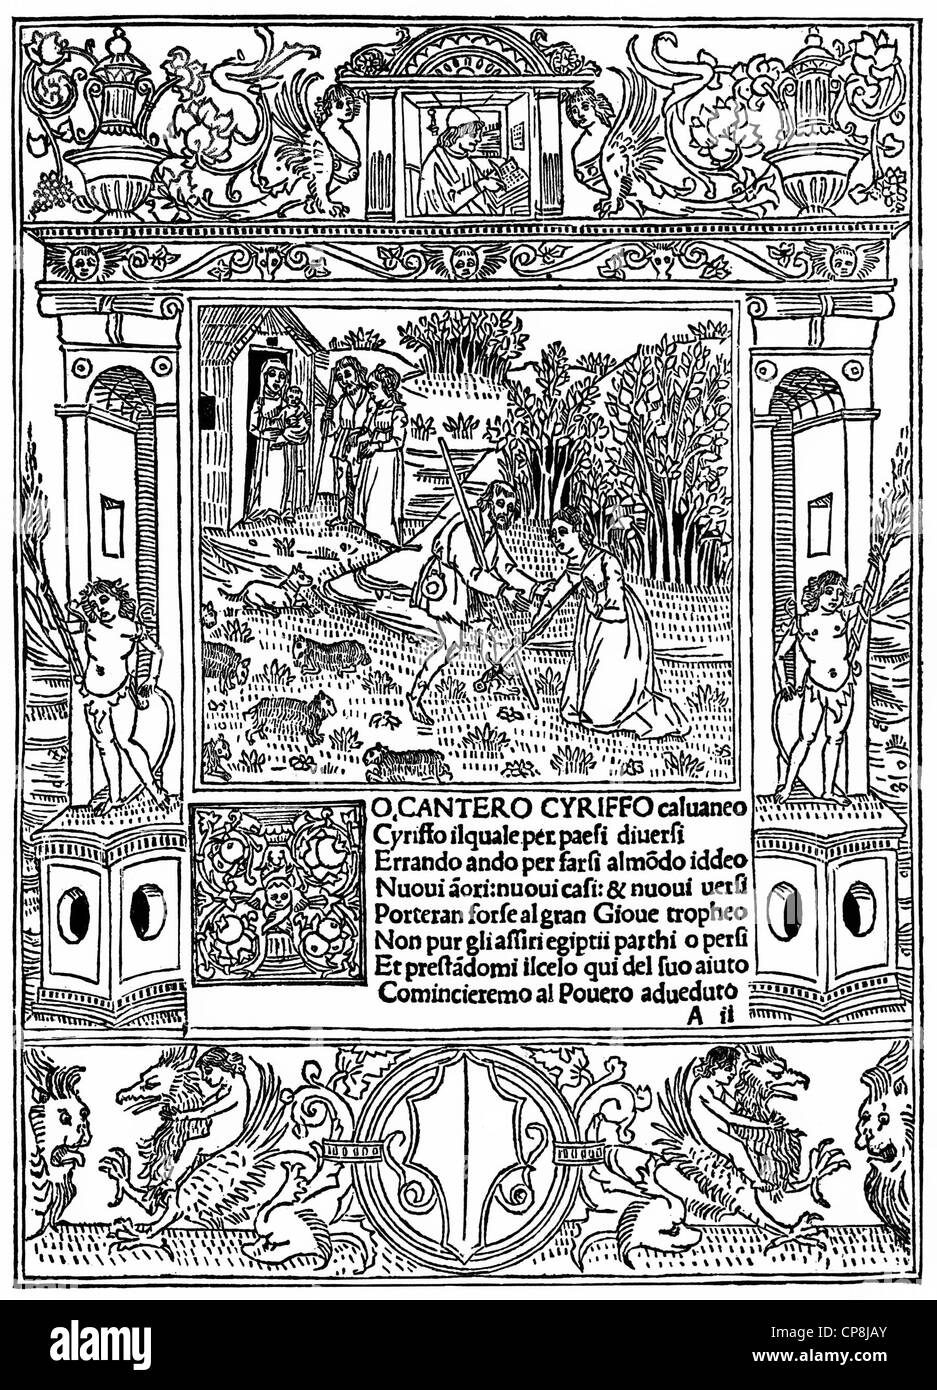 Historische Darstellung aus dem 19. Jahrhundert, Titelblatt von Cirillo Calvaneo von Luca Pulc, 1431-1470, einem italienischen Dichter Histor Stockfoto